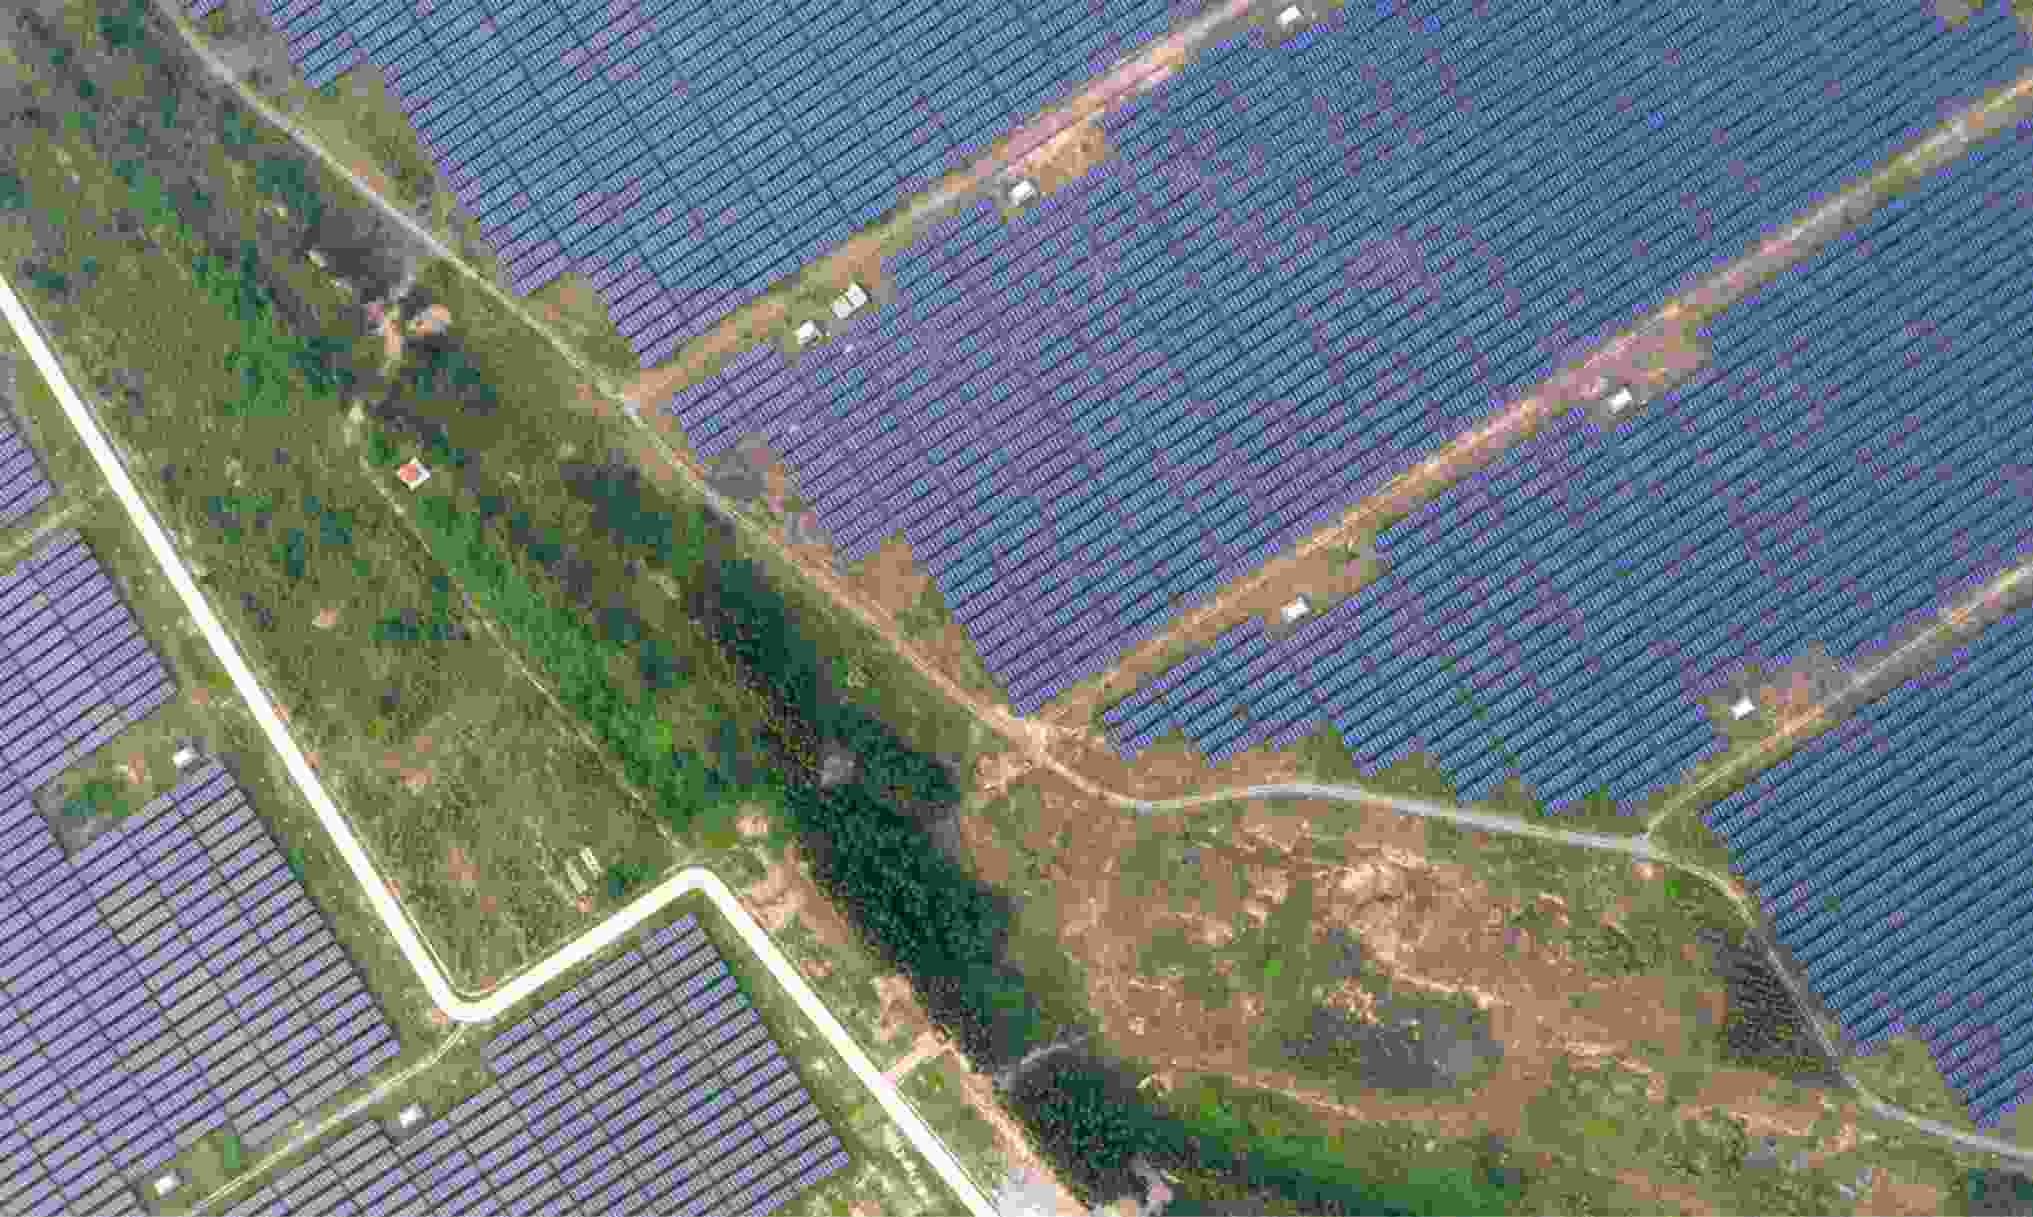 Aurora-inicia-primeira-etapa-de-projeto-de-usina-fotovoltaica-em-Minas-Gerais-1